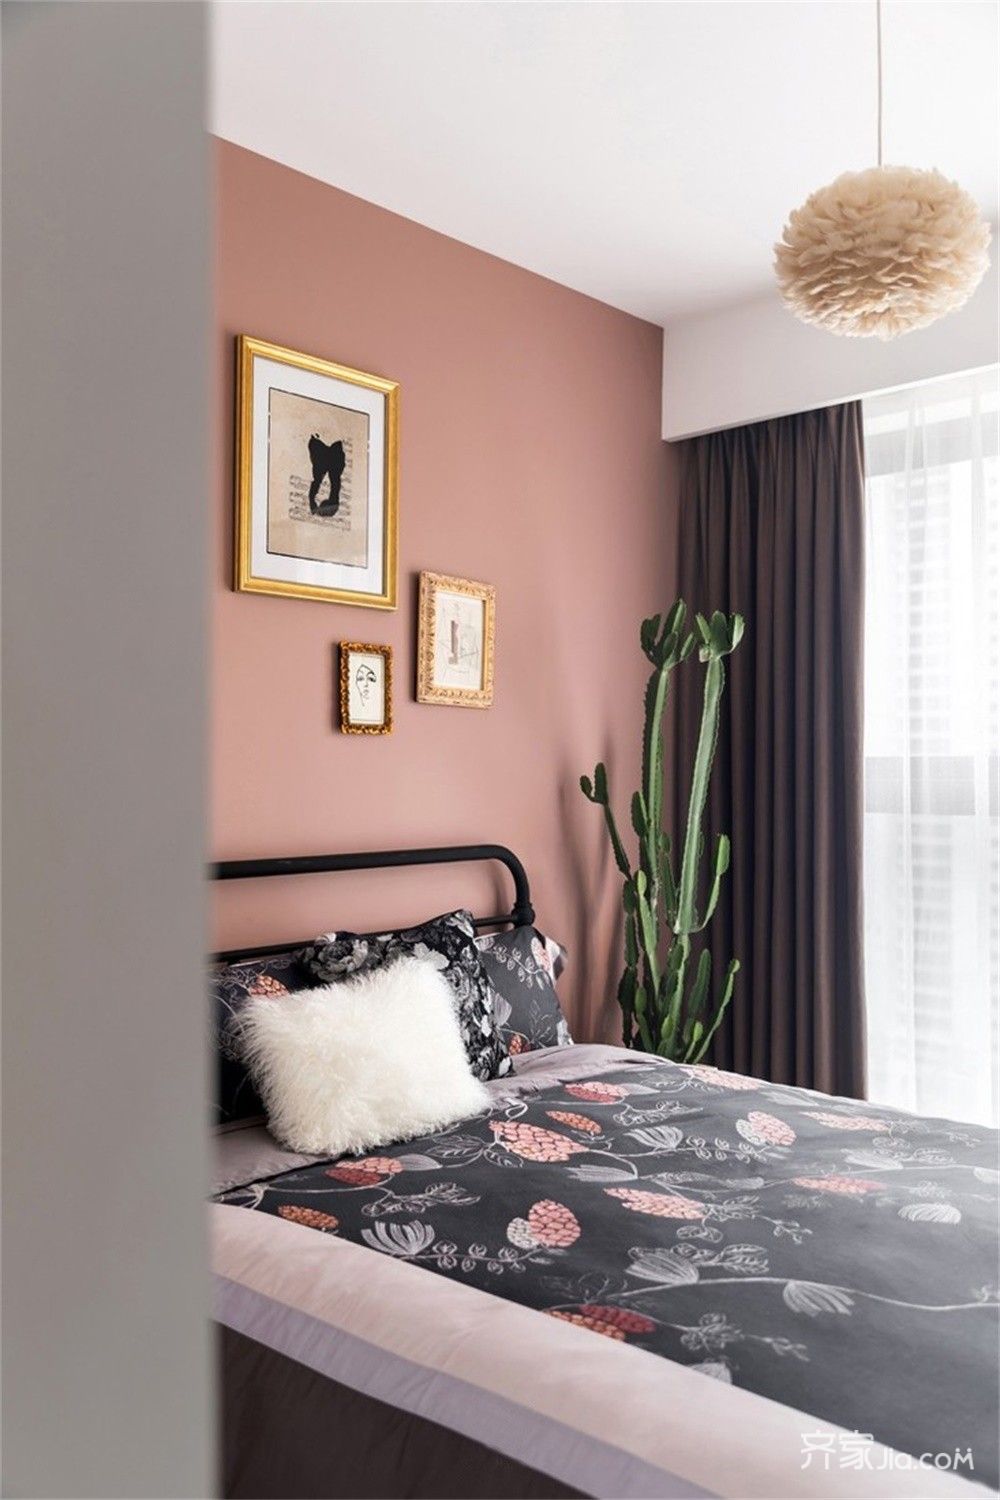 将业主想要的色彩变化也带入卧室里面,设计师选择的暖色更有助于休息.